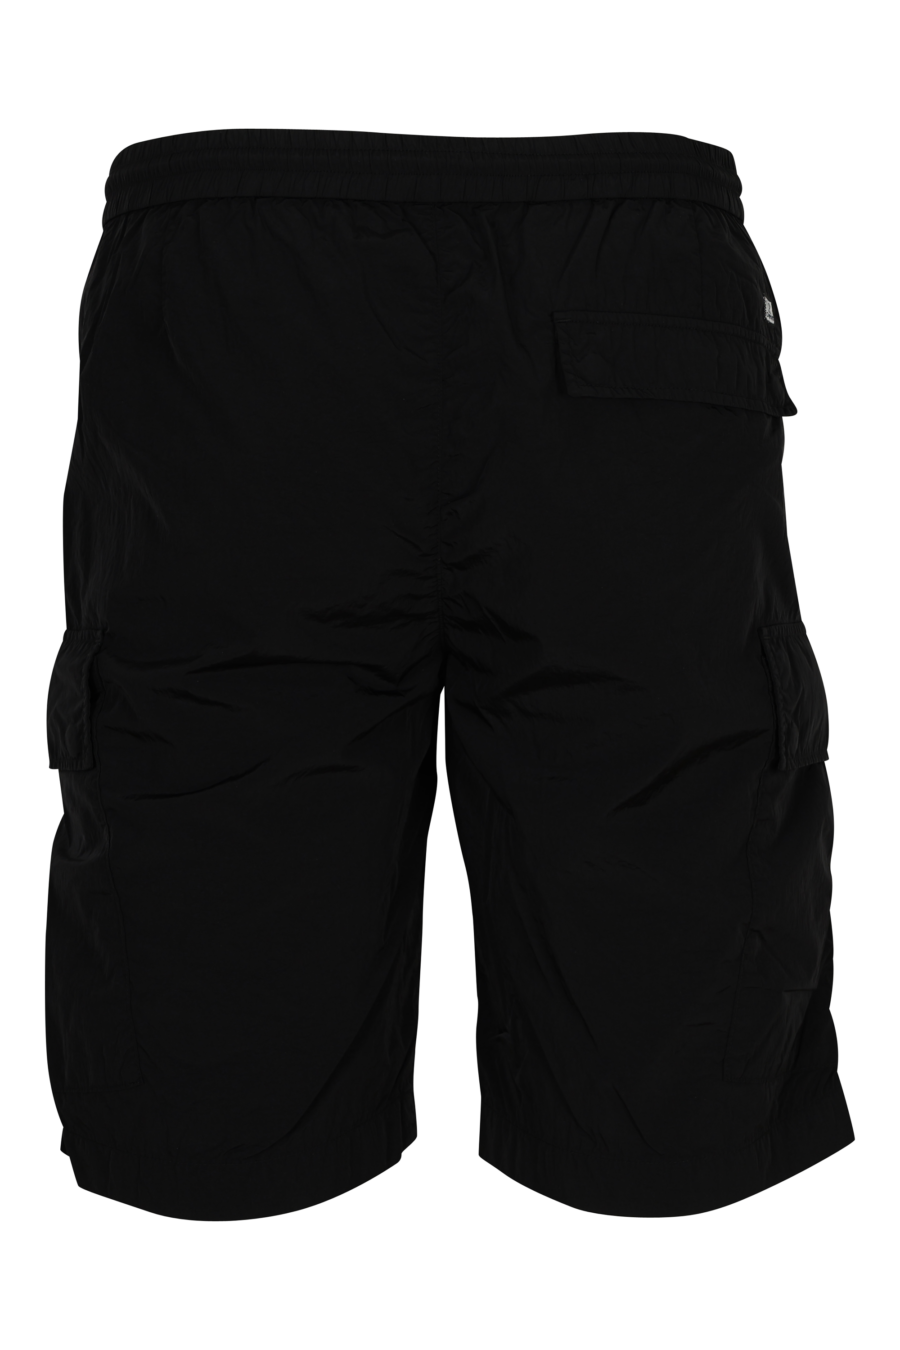 Pantalón corto negro con minilogo lente - 7620943785616 2